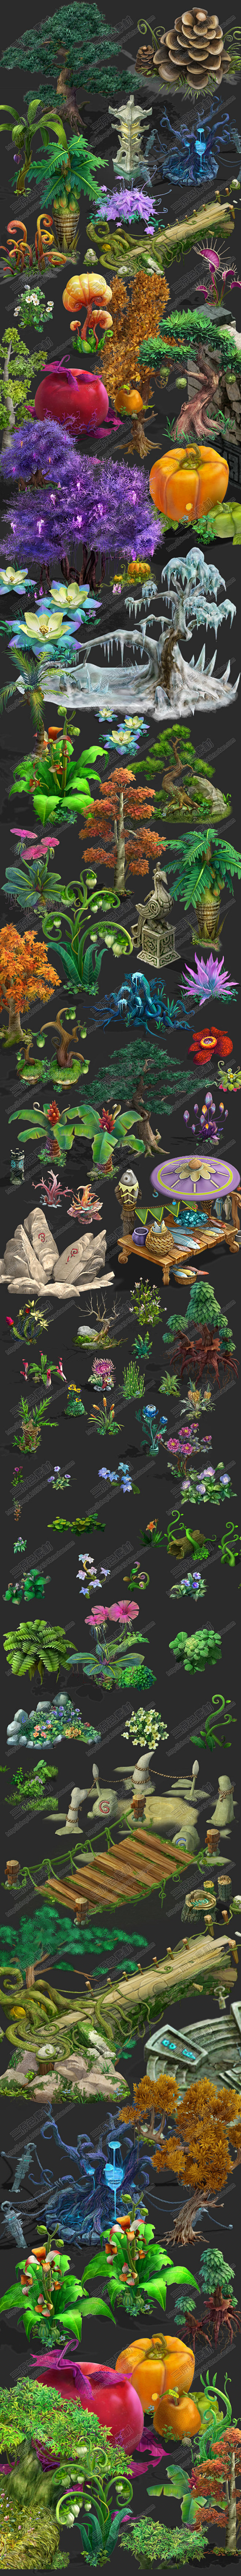 游戏美术资源 Q版手绘植物修图素材 高清...